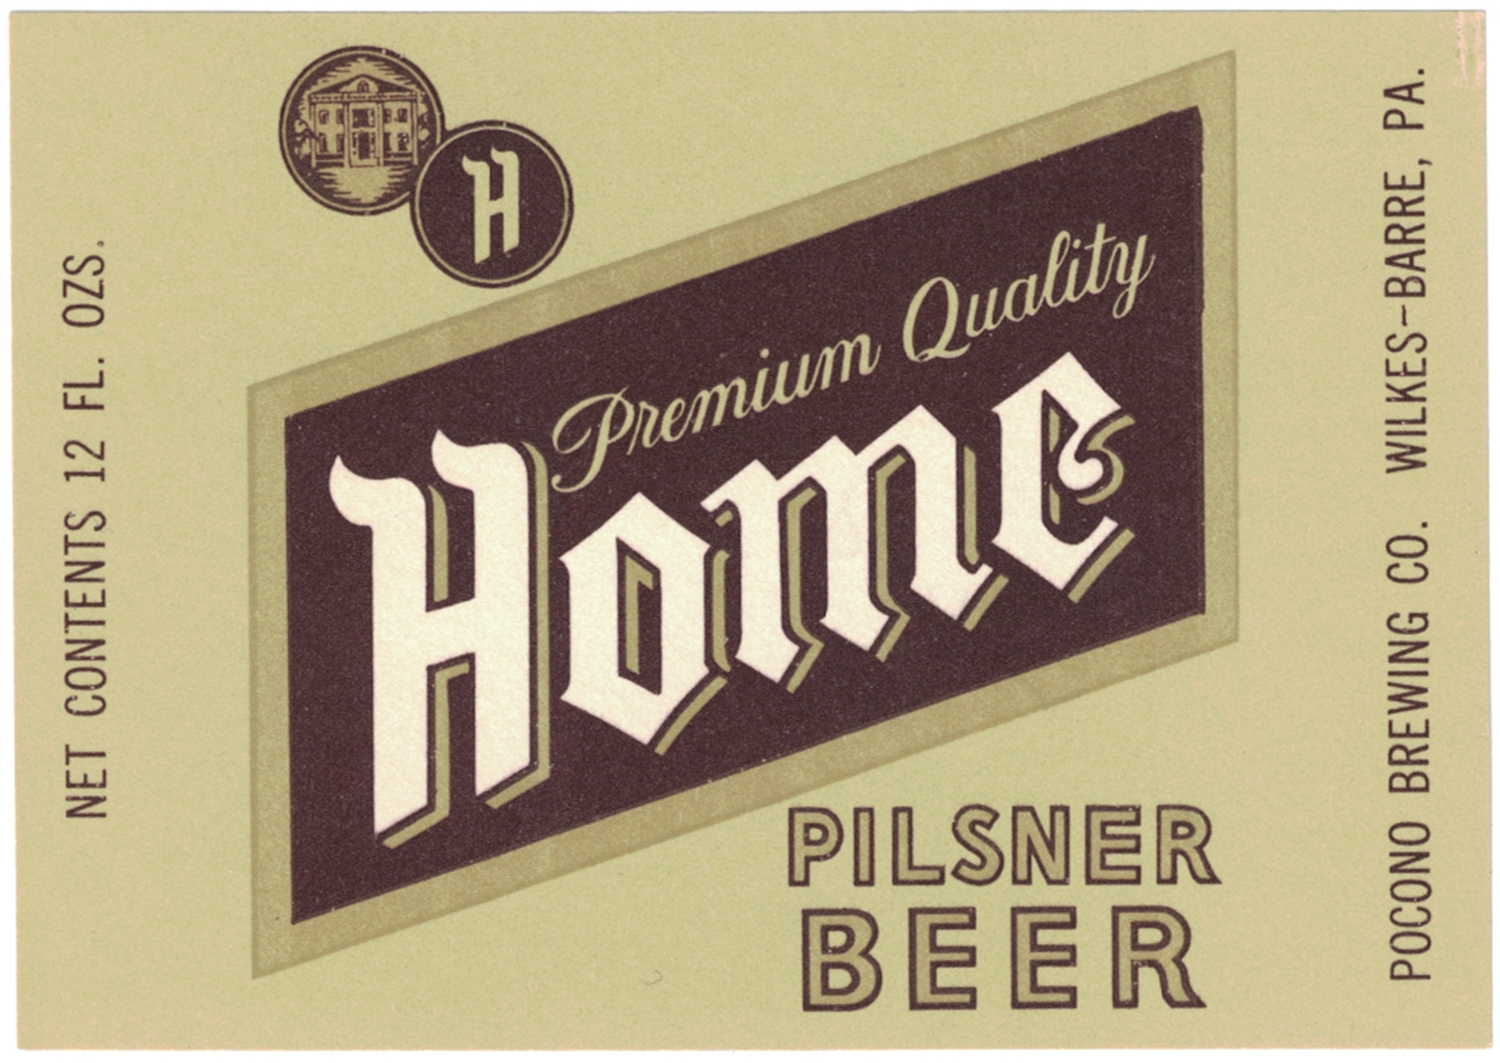 Home Pilsner Beer Label